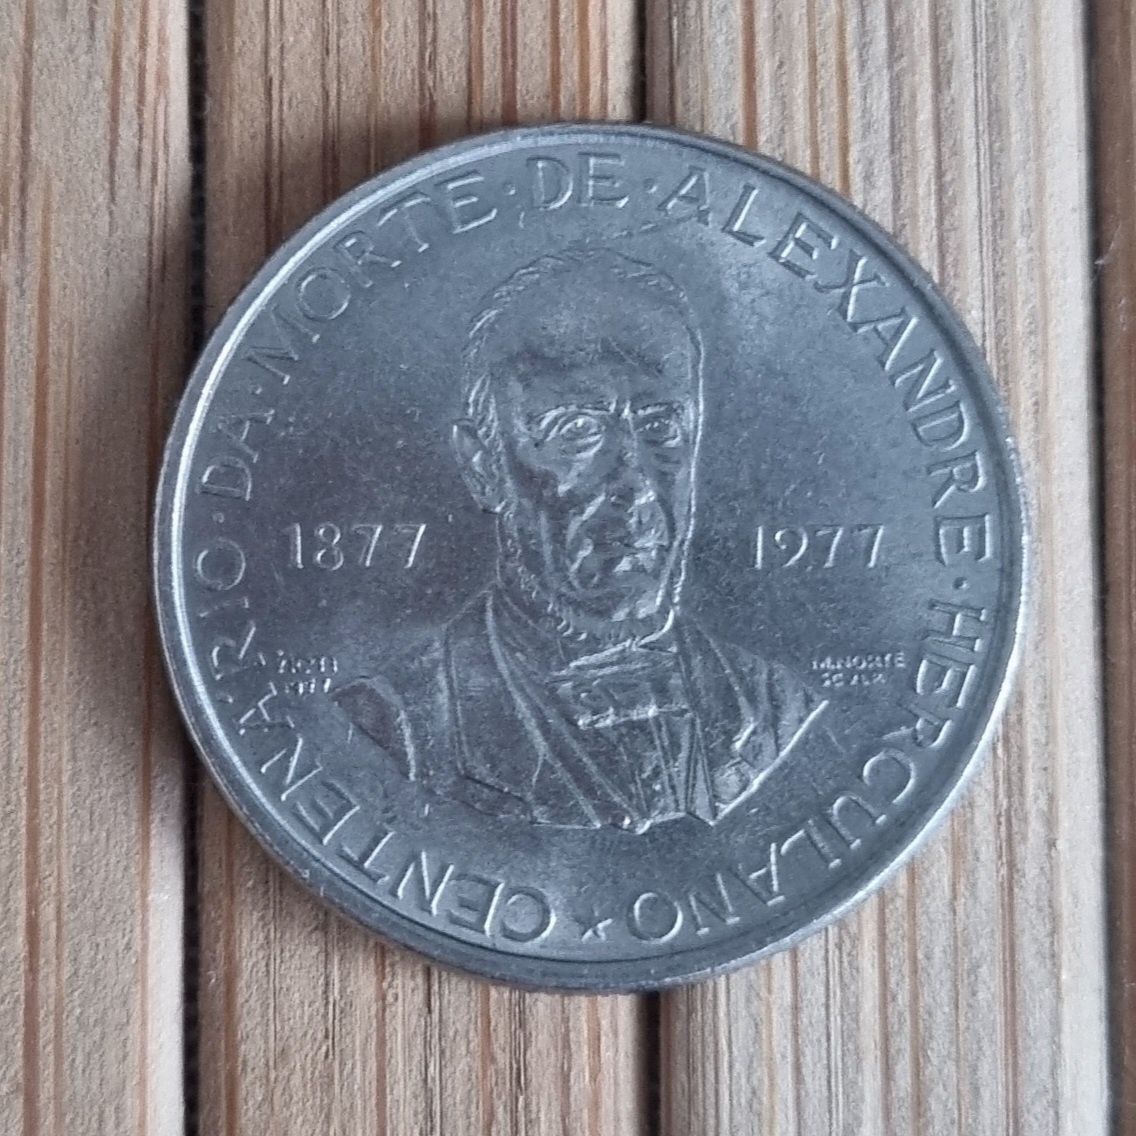 7 Moedas 2$50 escudos antigas de 1977, centenario da morte de Alexandr